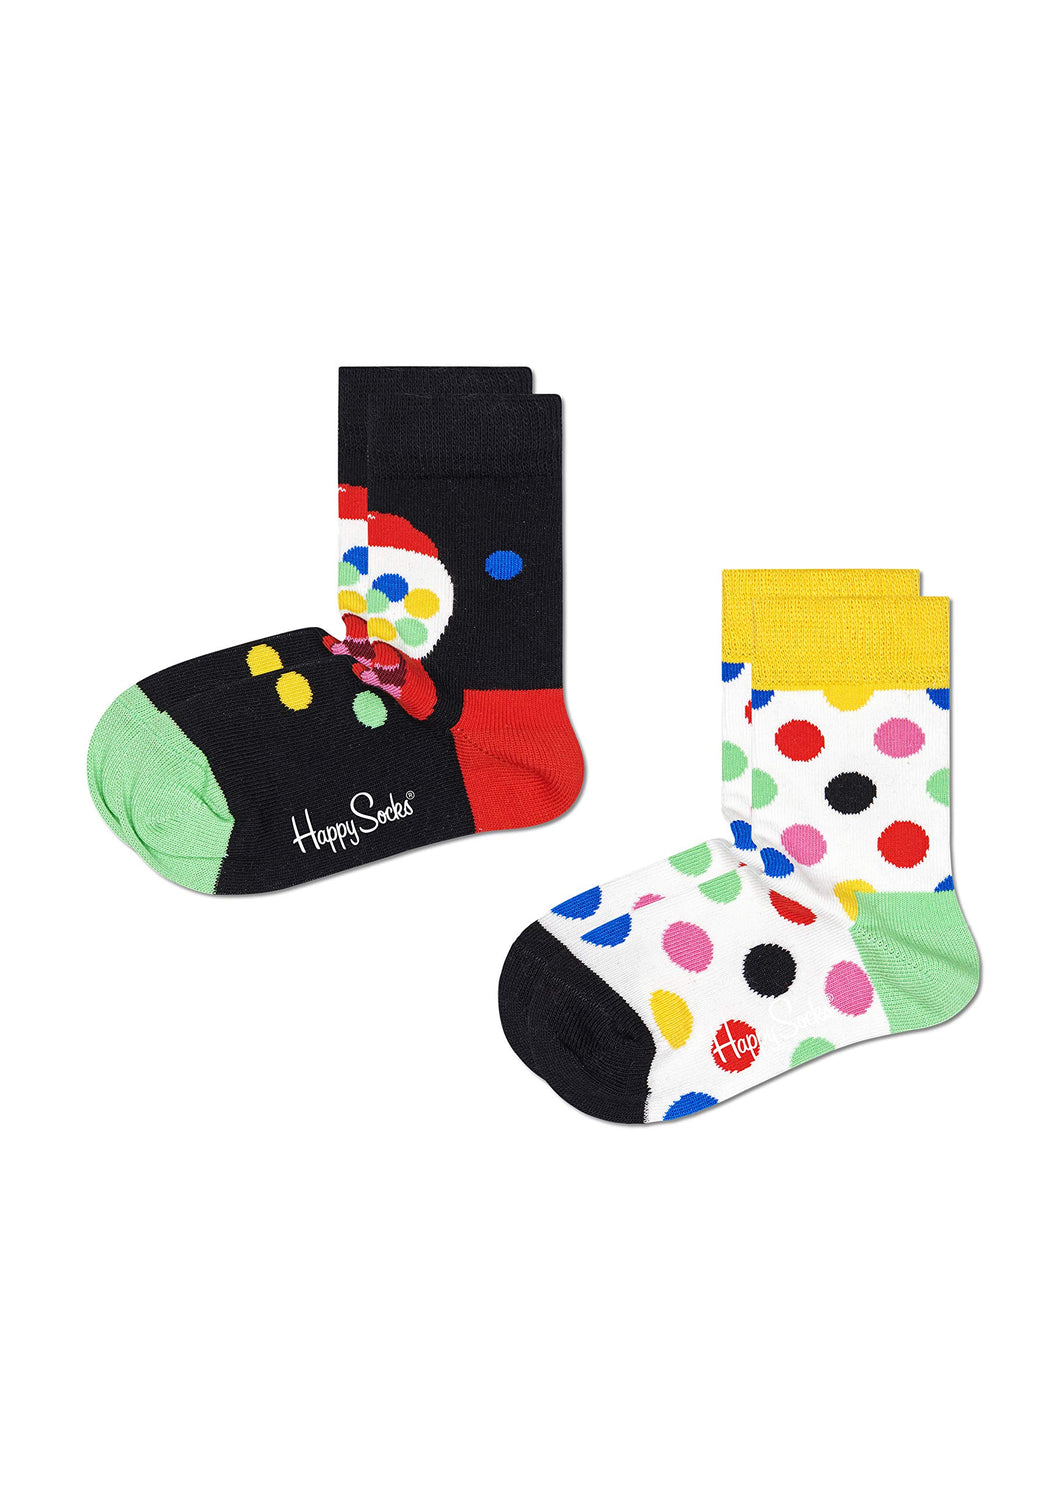 Happy Socks Bubblegum 2-Pack Calzini, Multicolore, 4-6 Anni Unisex-Bambini e Ragazzi